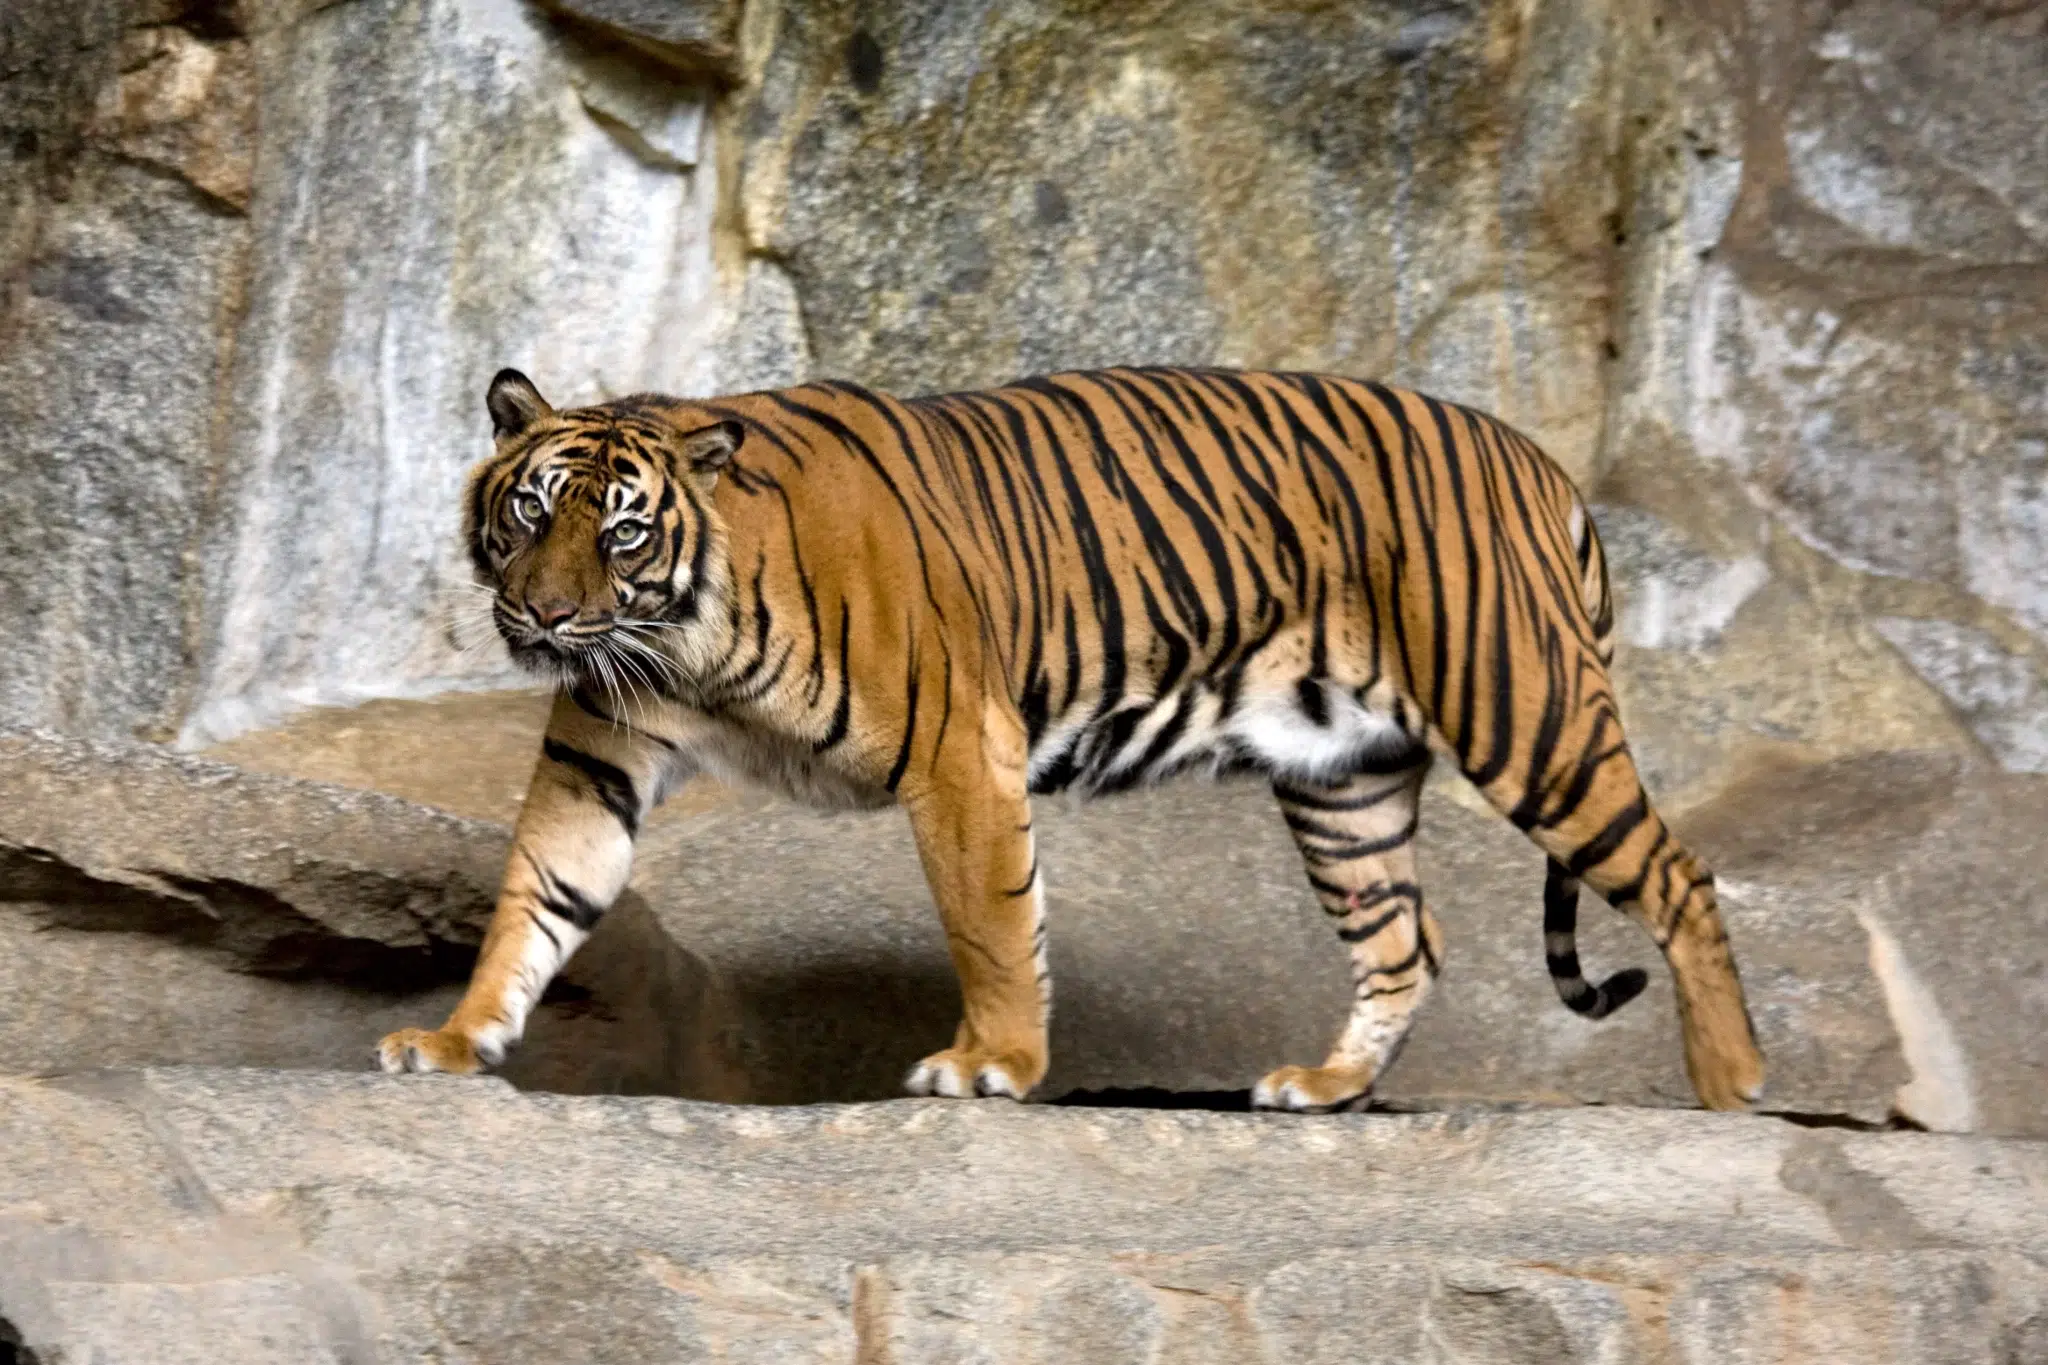 النمر السومطري (Panthera tigris sumatrae) - أنواع النمور في العالم بالصور والأسماء